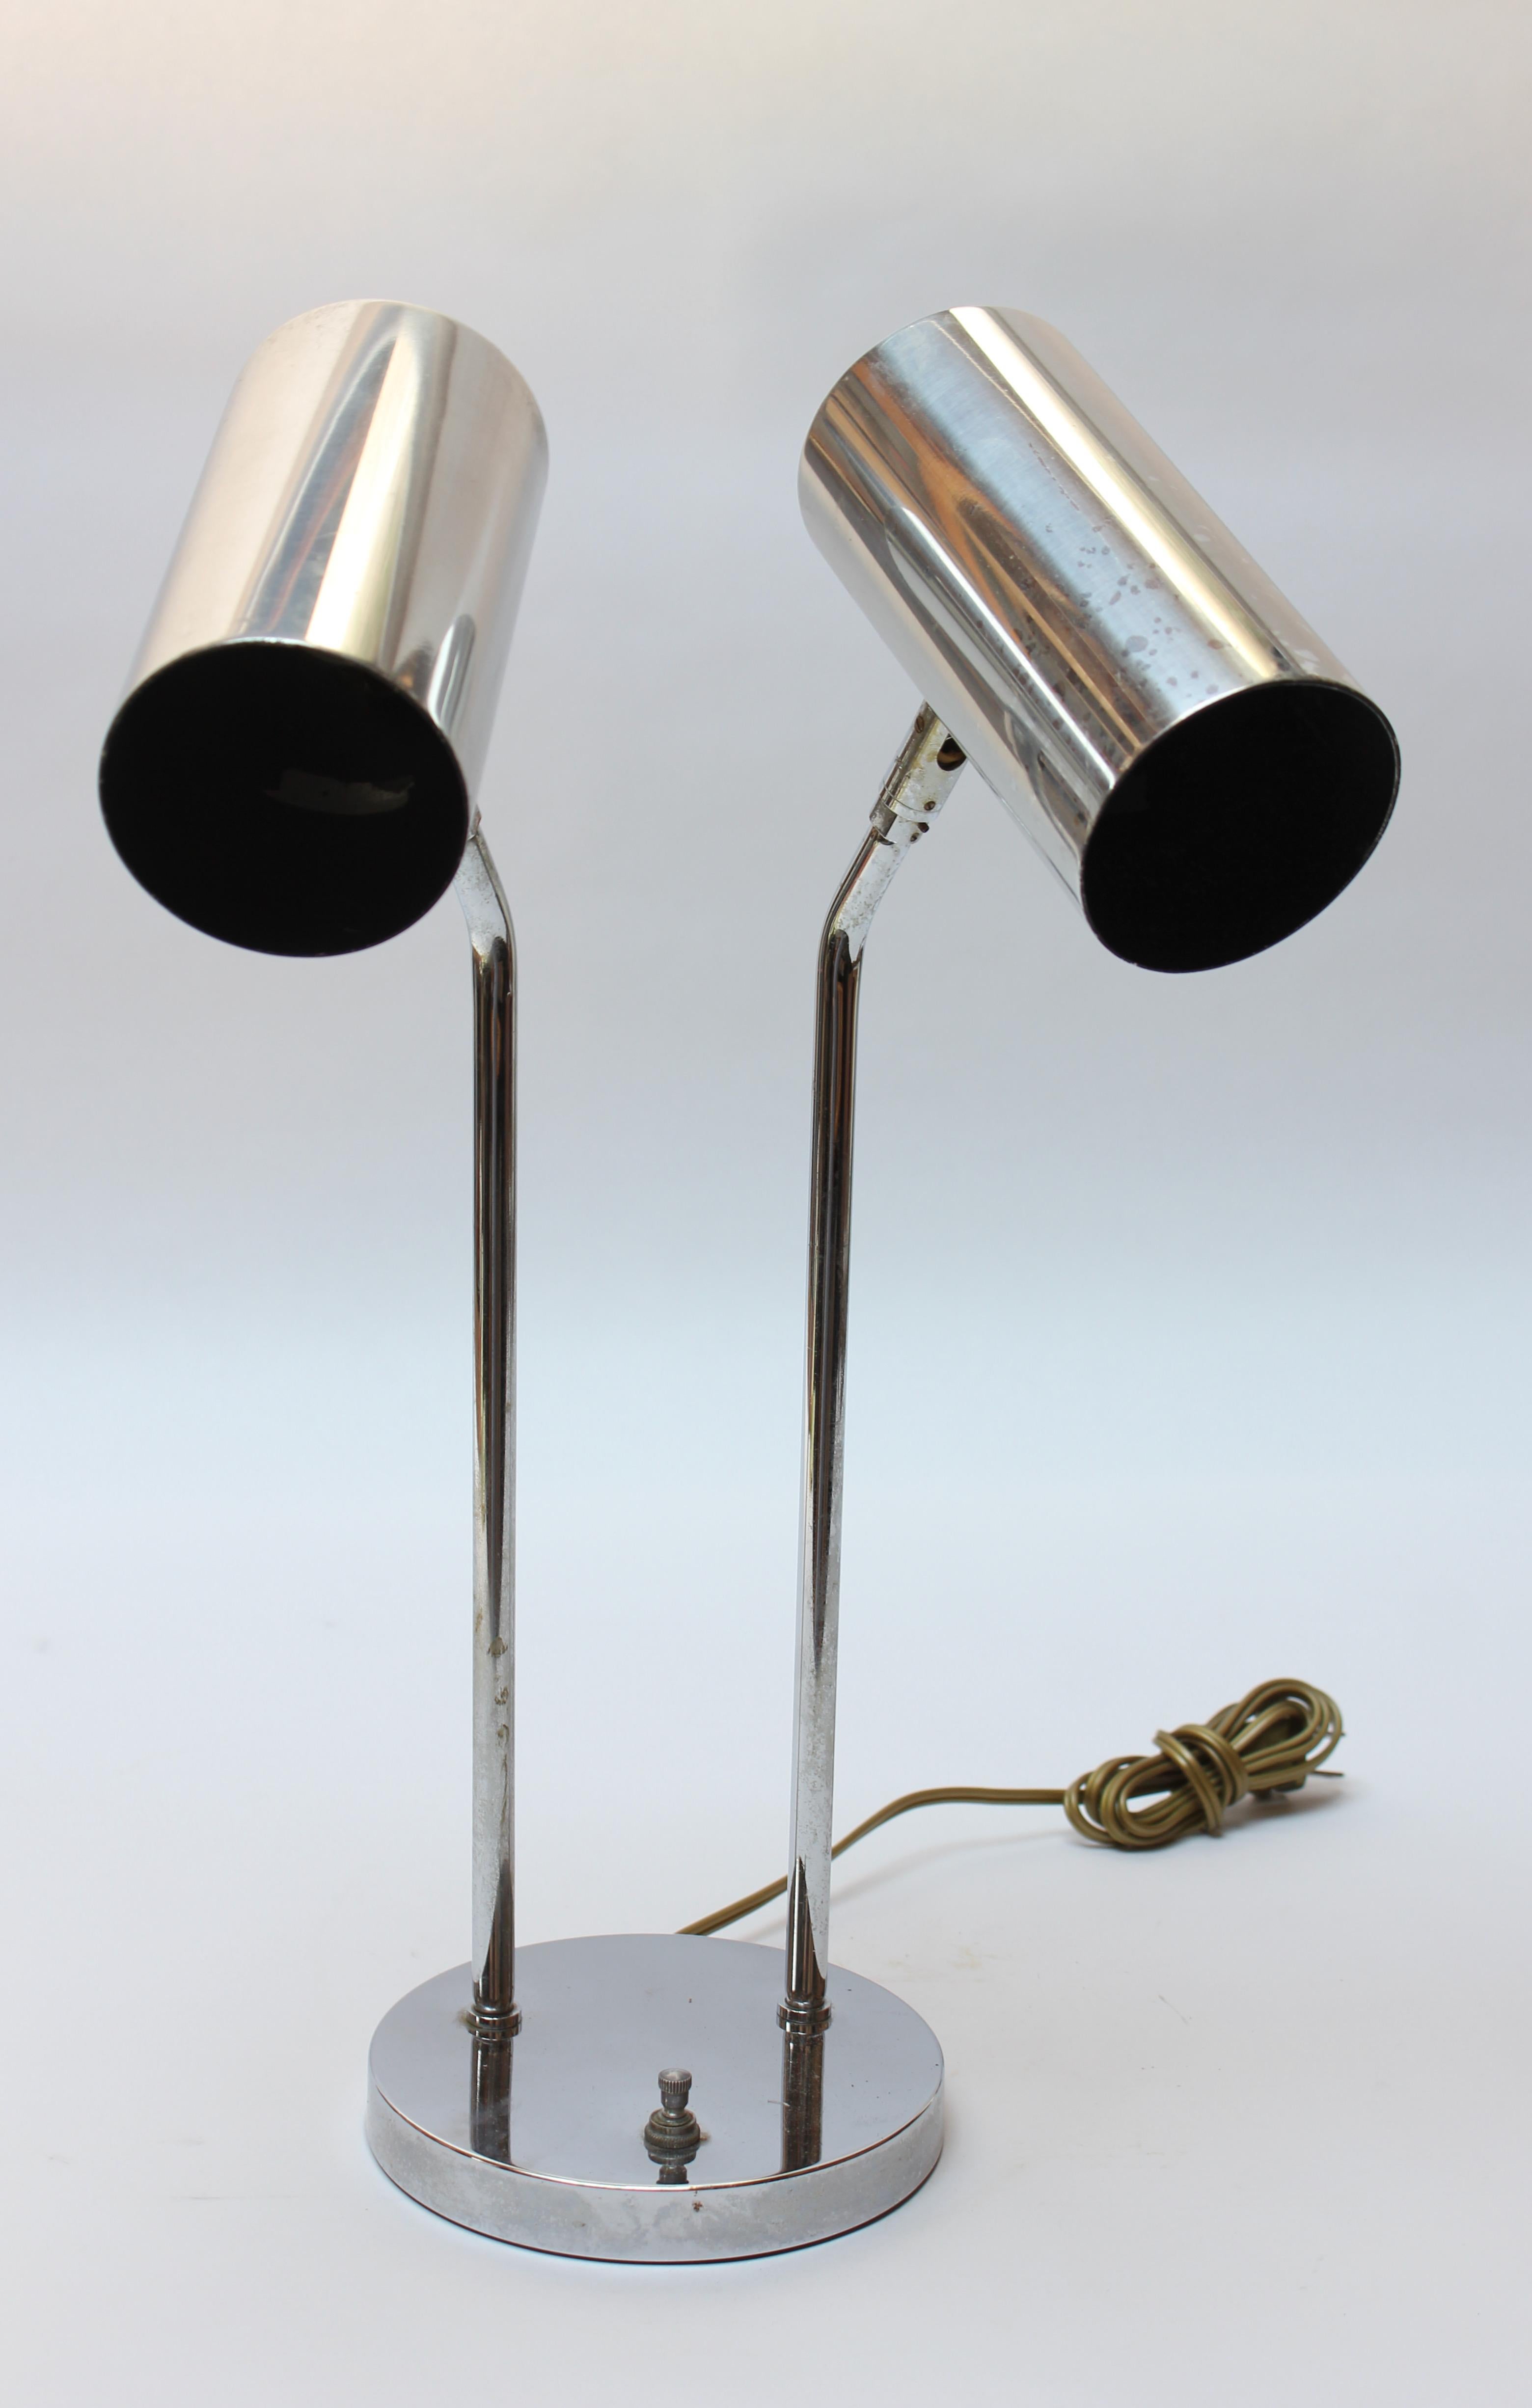 Verchromte Tischleuchte von Robert Sonneman für Koch & Lowy (ca. 1970er Jahre). Die Leuchte besteht aus zwei schwenkbaren, zylindrischen Schirmen, die von rohrförmigen, verchromten Stielen getragen werden, und einem runden Sockel mit einem einzigen